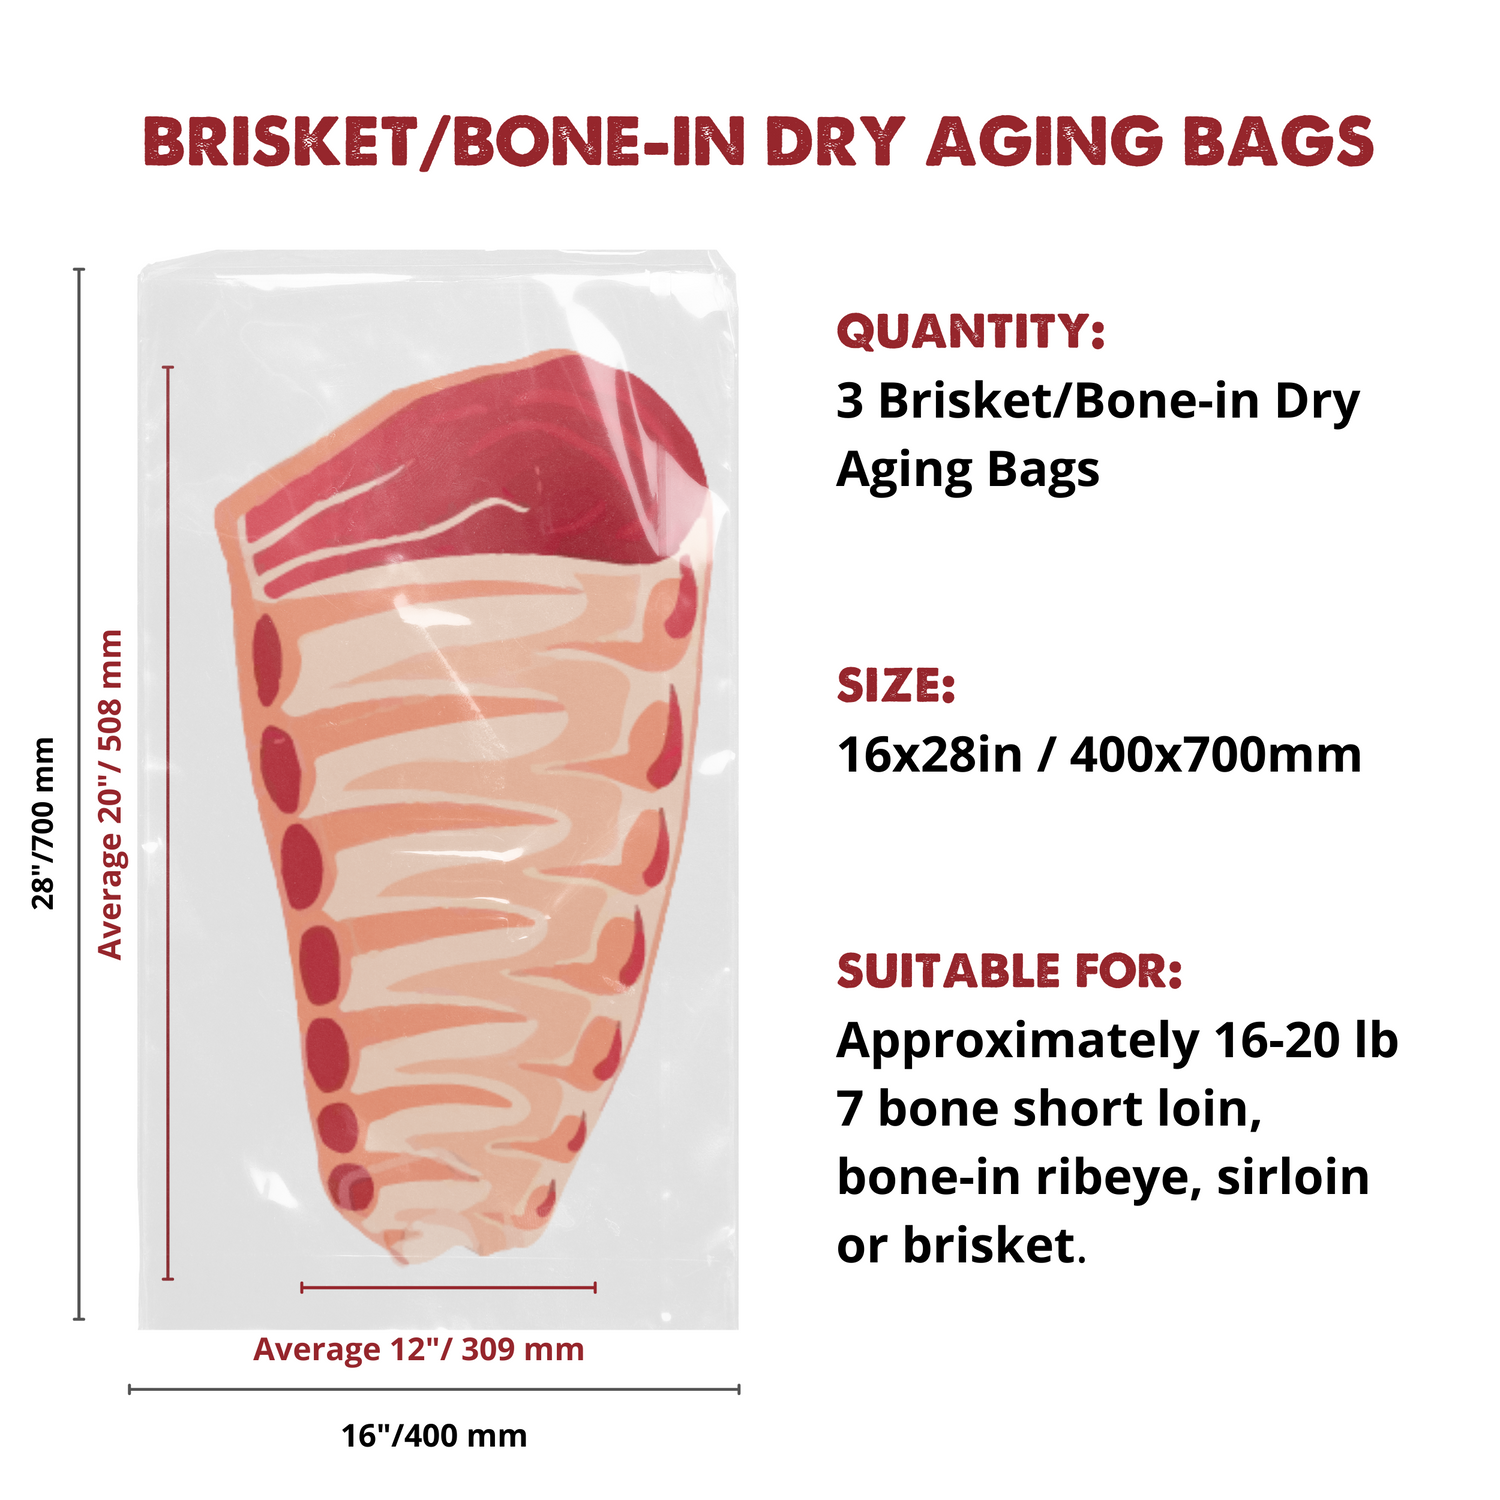 UMAI Dry Aging Brisket or Bone-in Bags - UMAi Dry